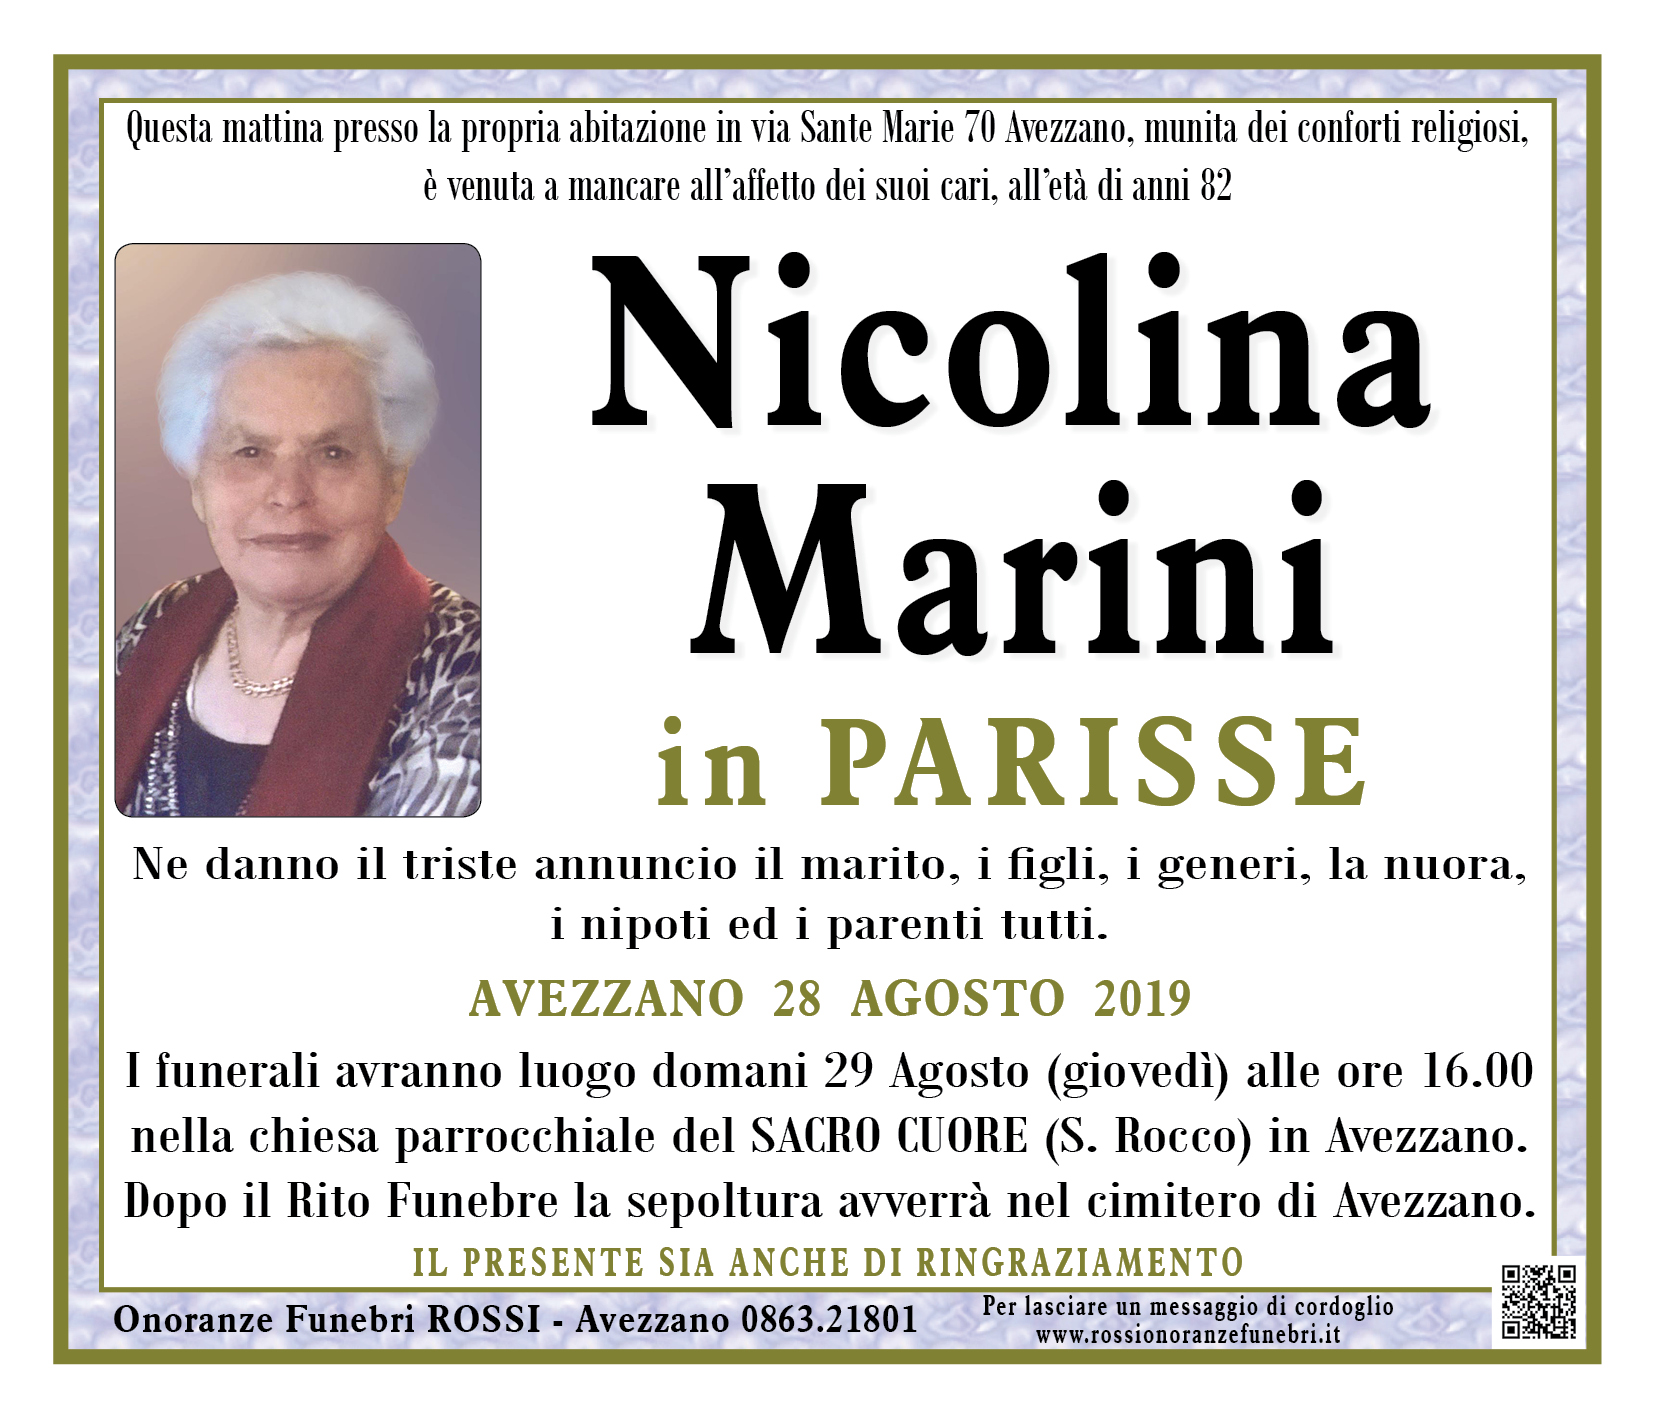 Nicolina Marini